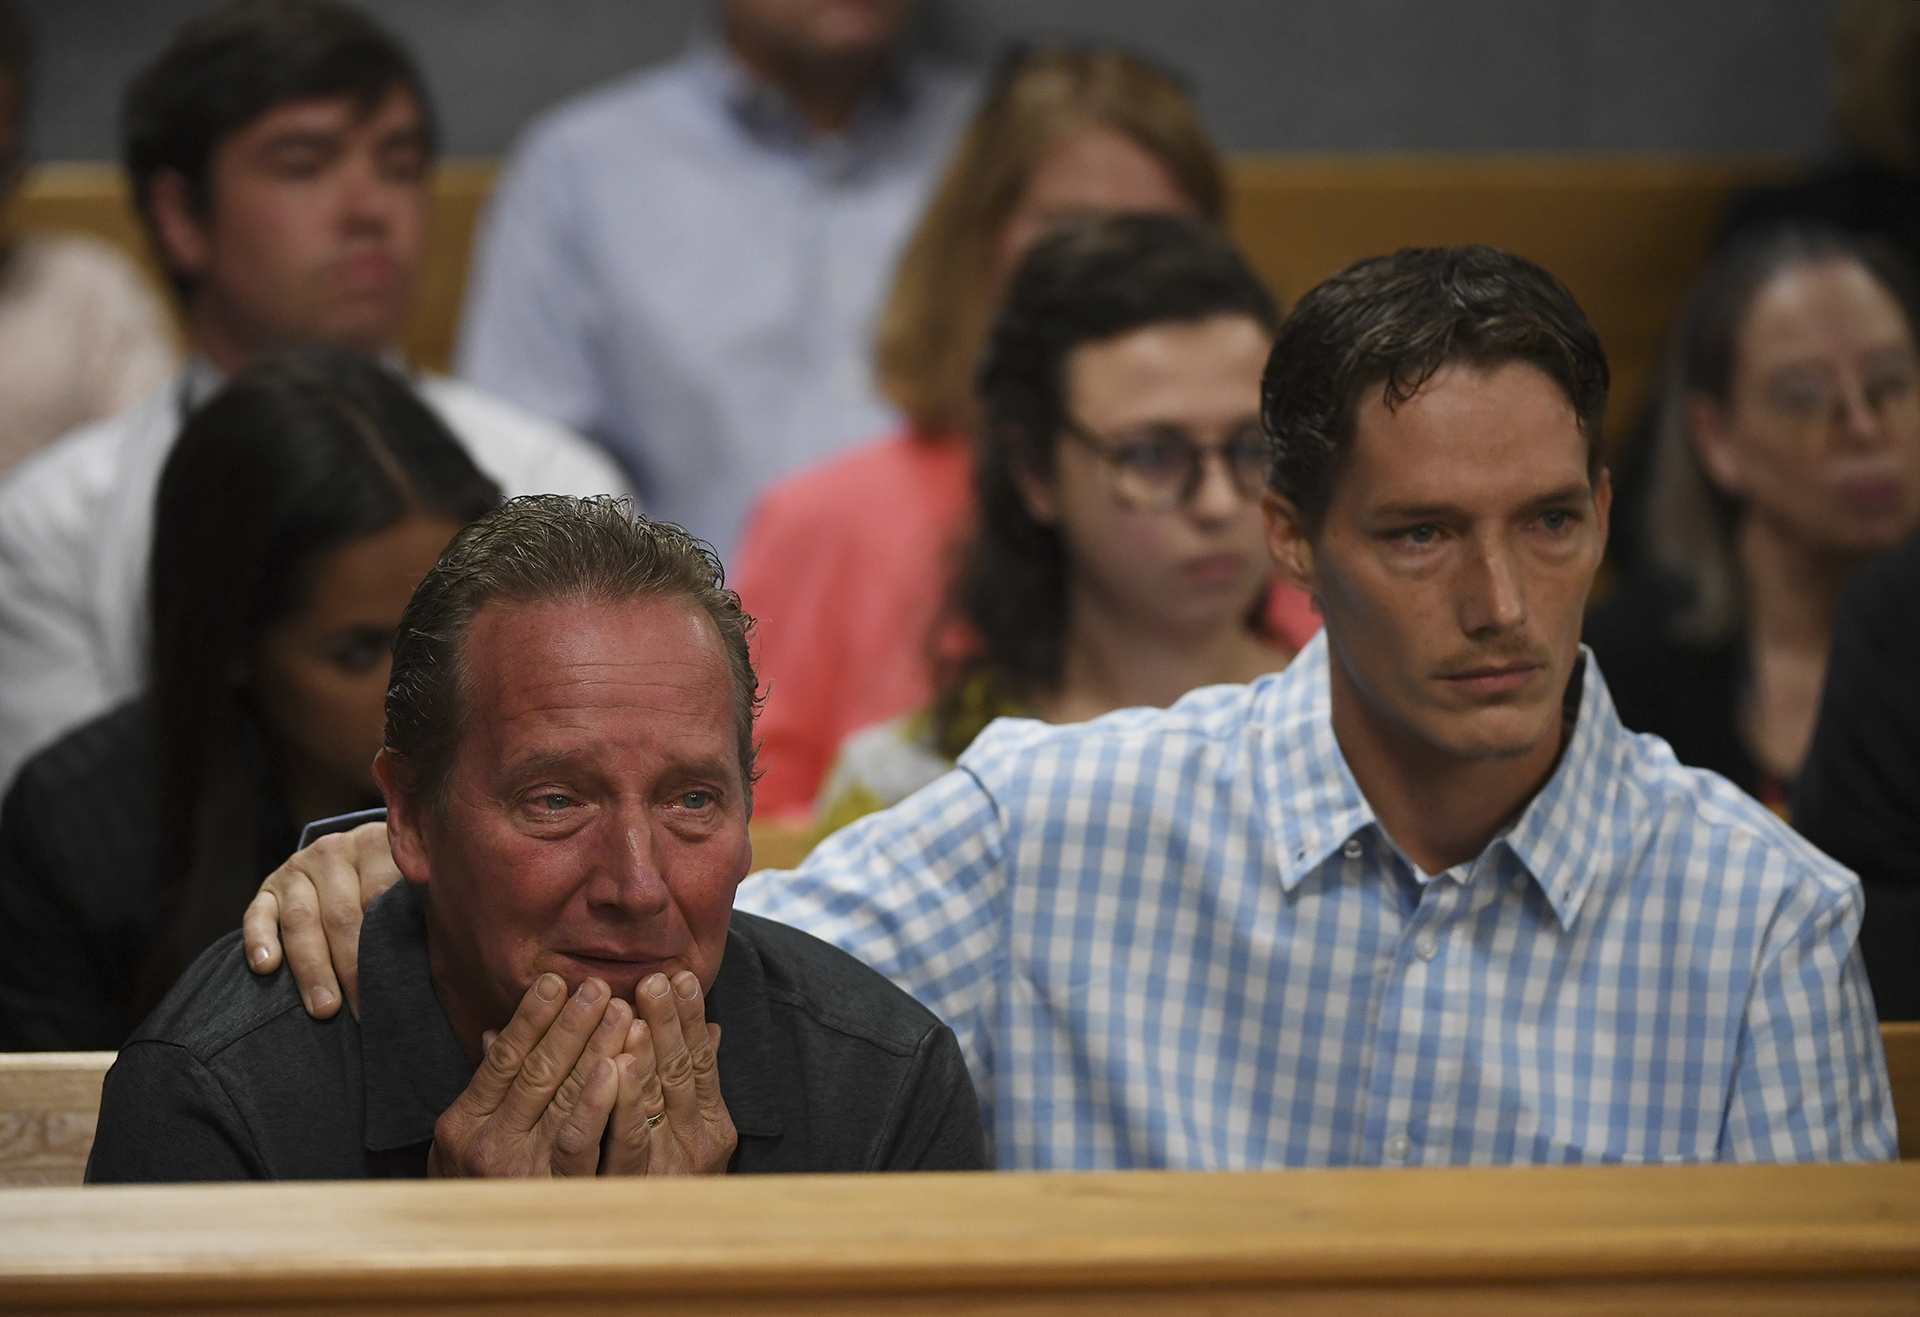 Frank Rzucek, el padre de Shanann Watts, y su hermano Frankie Rzucek estaban en la corte para la audiencia de lectura de cargos de Christopher Watts en el juzgado del condado de Weld el 21 de agosto de 2018 en Greeley, Colorado RJ Sangosti - Pool/Getty Images)
